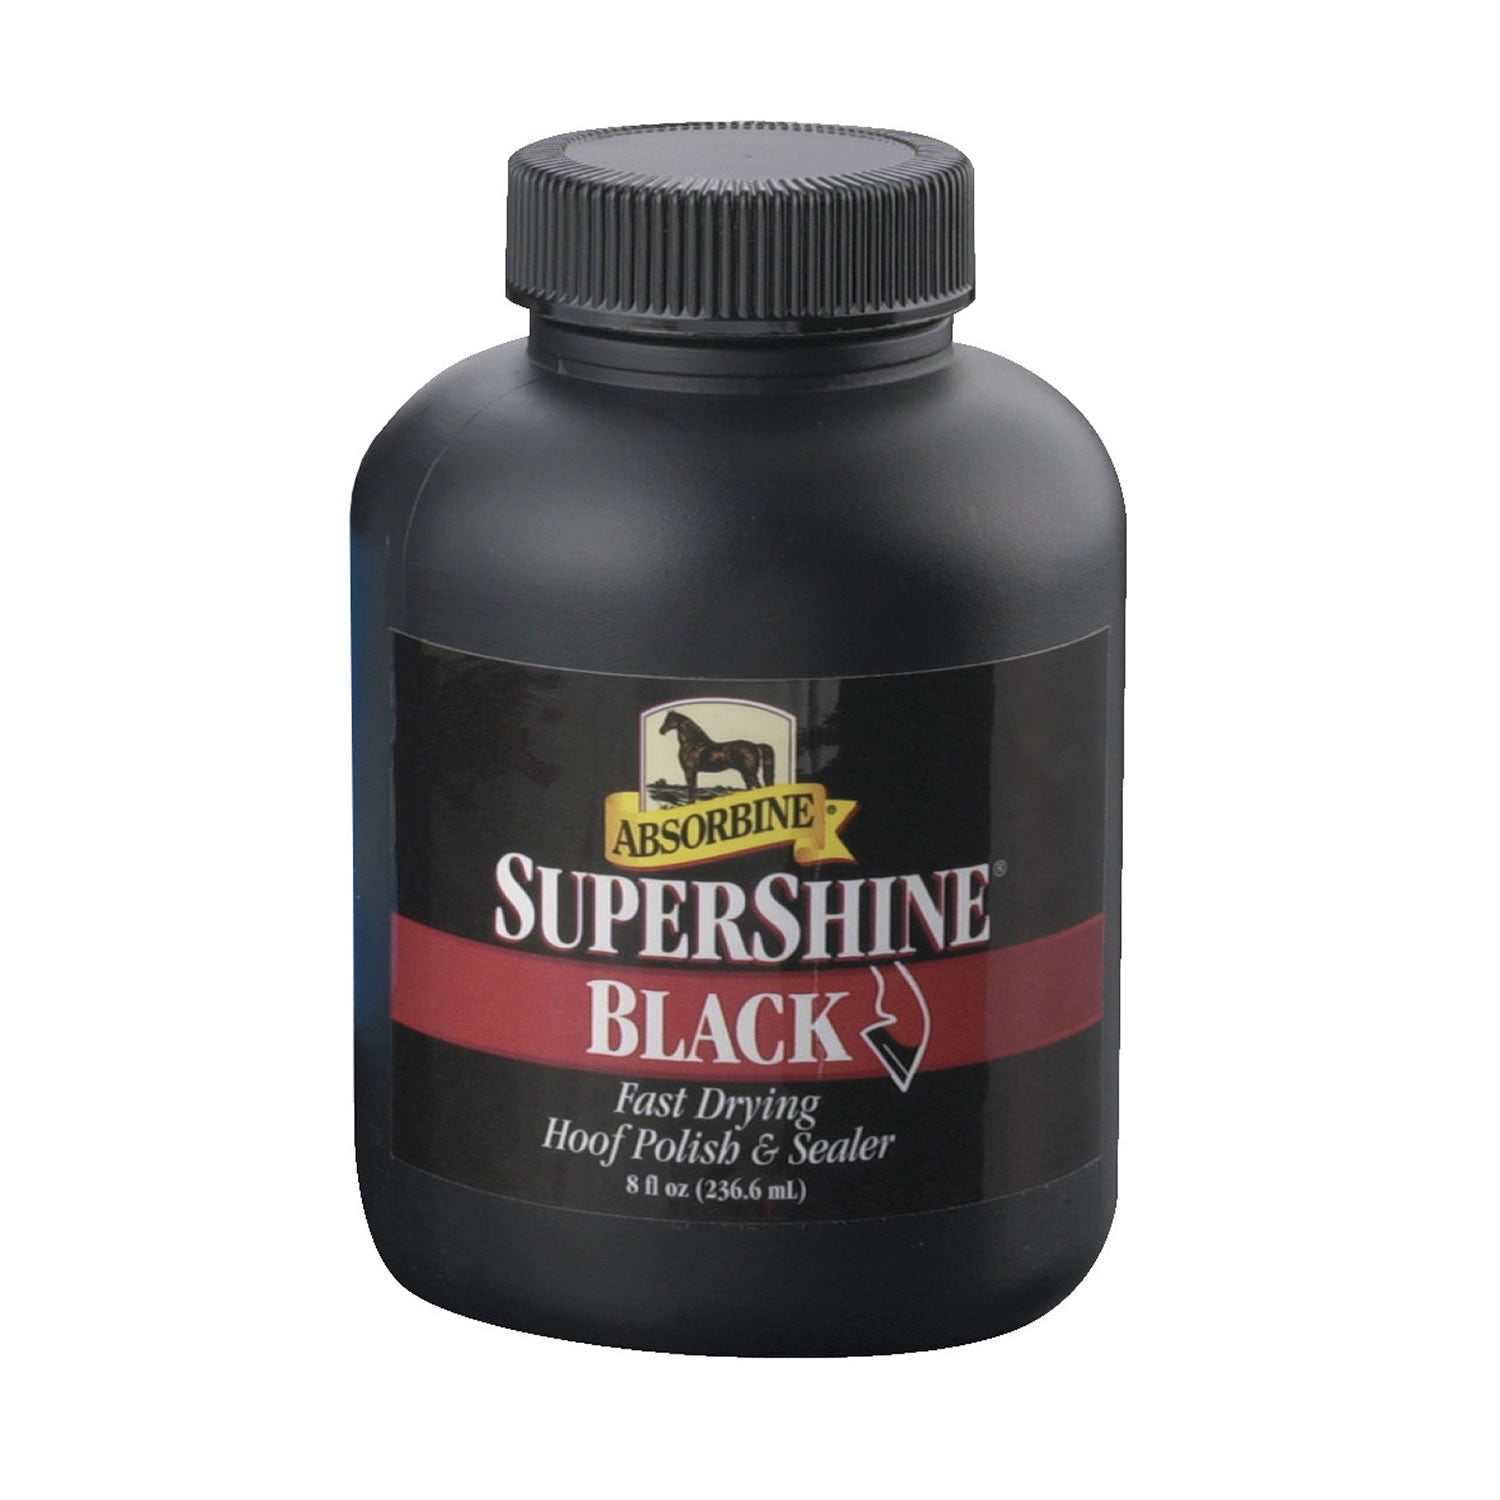 Absorbine Supershine Black Hoof Polish 237ml 